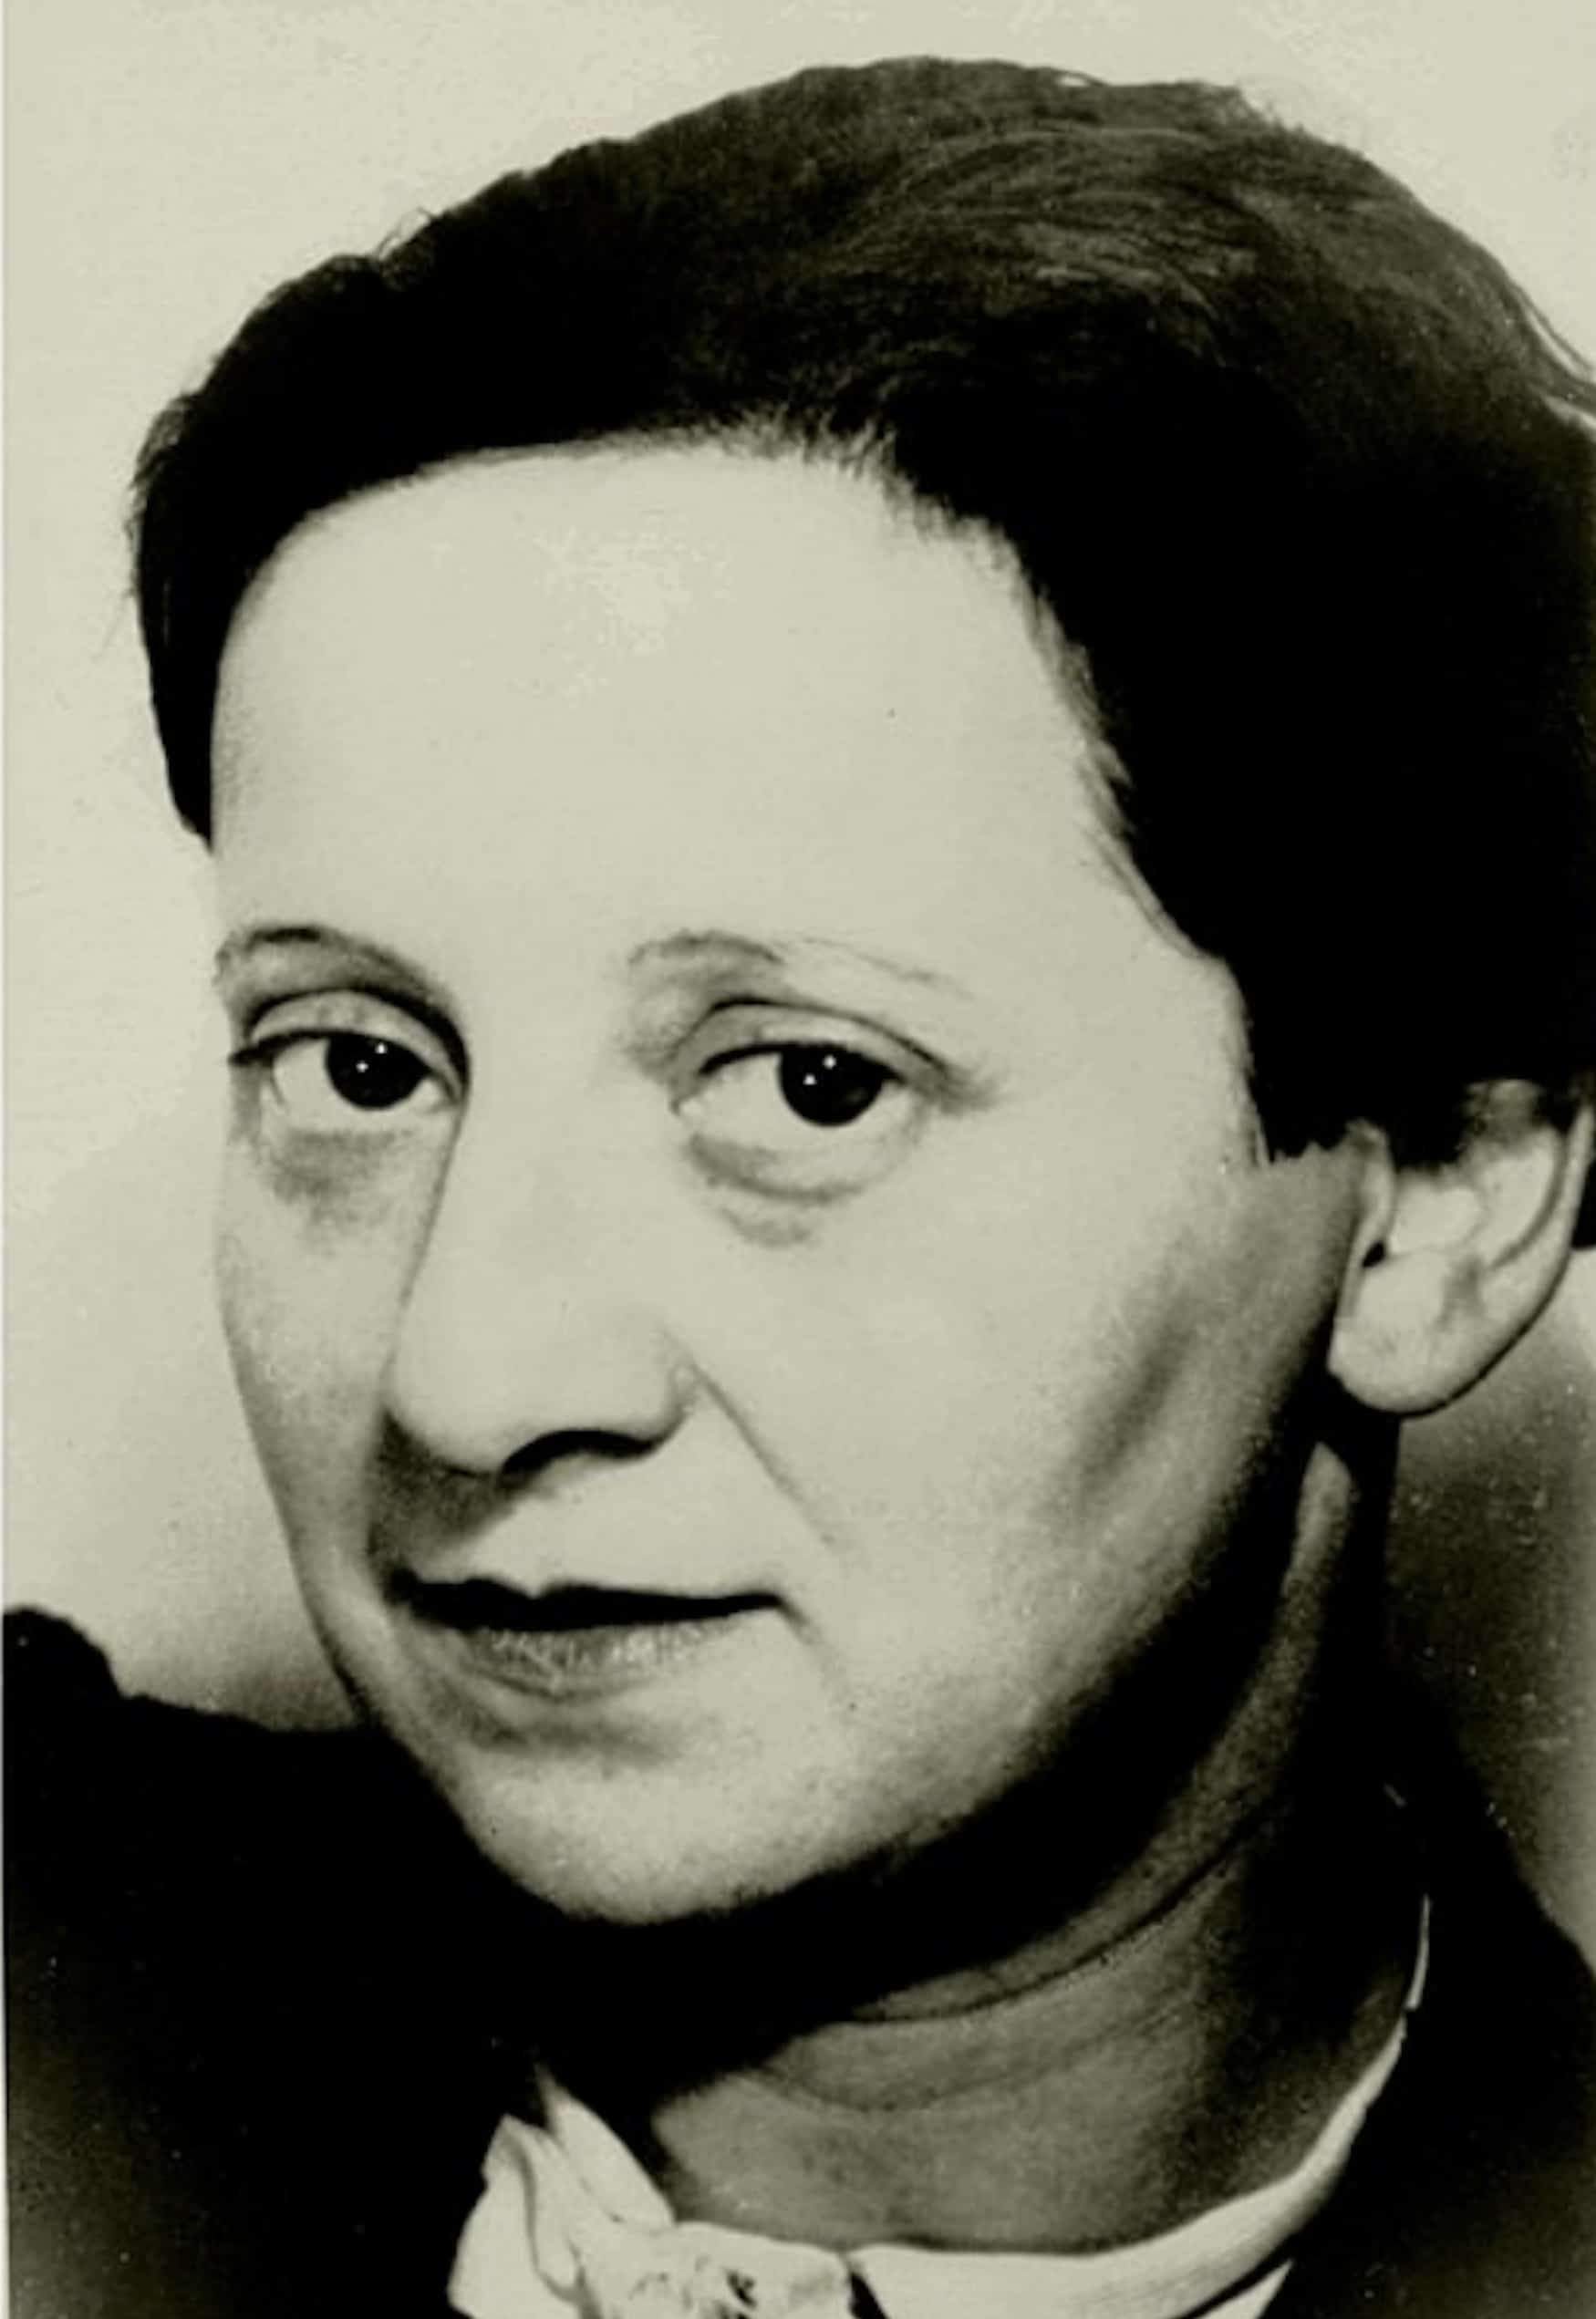 Porträt-Archivbild von Friedl Dicker. Eine junge Frau blickt in die Kamera.